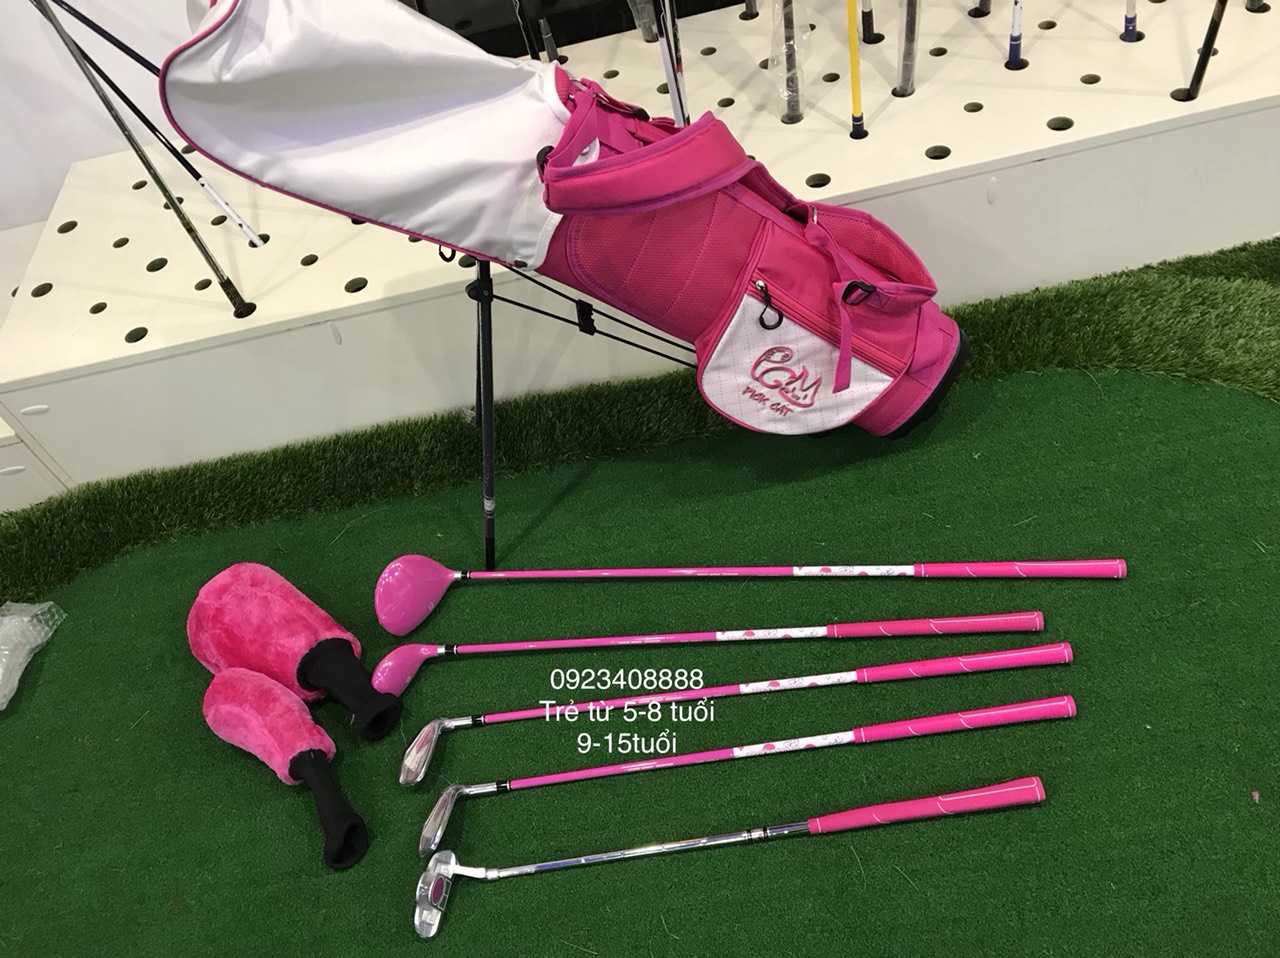 Bộ gậy golf trẻ em và túi màu hồng